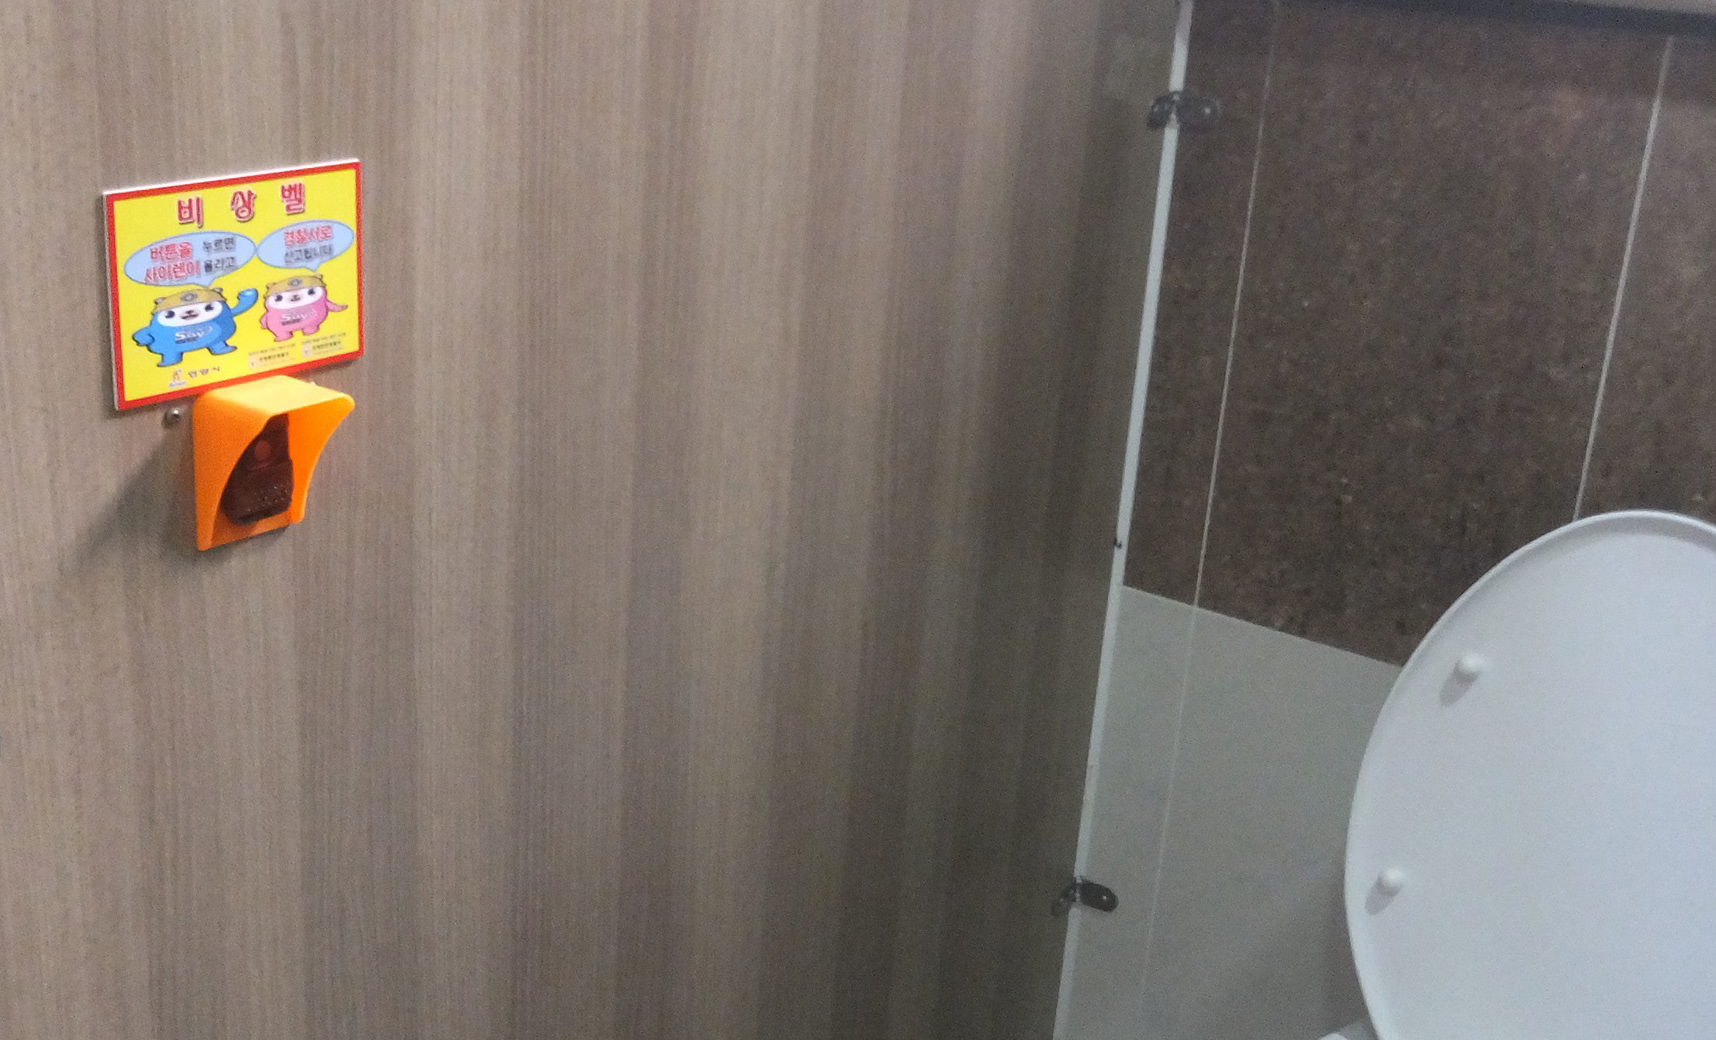 공중화장실 안에 설치한 비상벨.